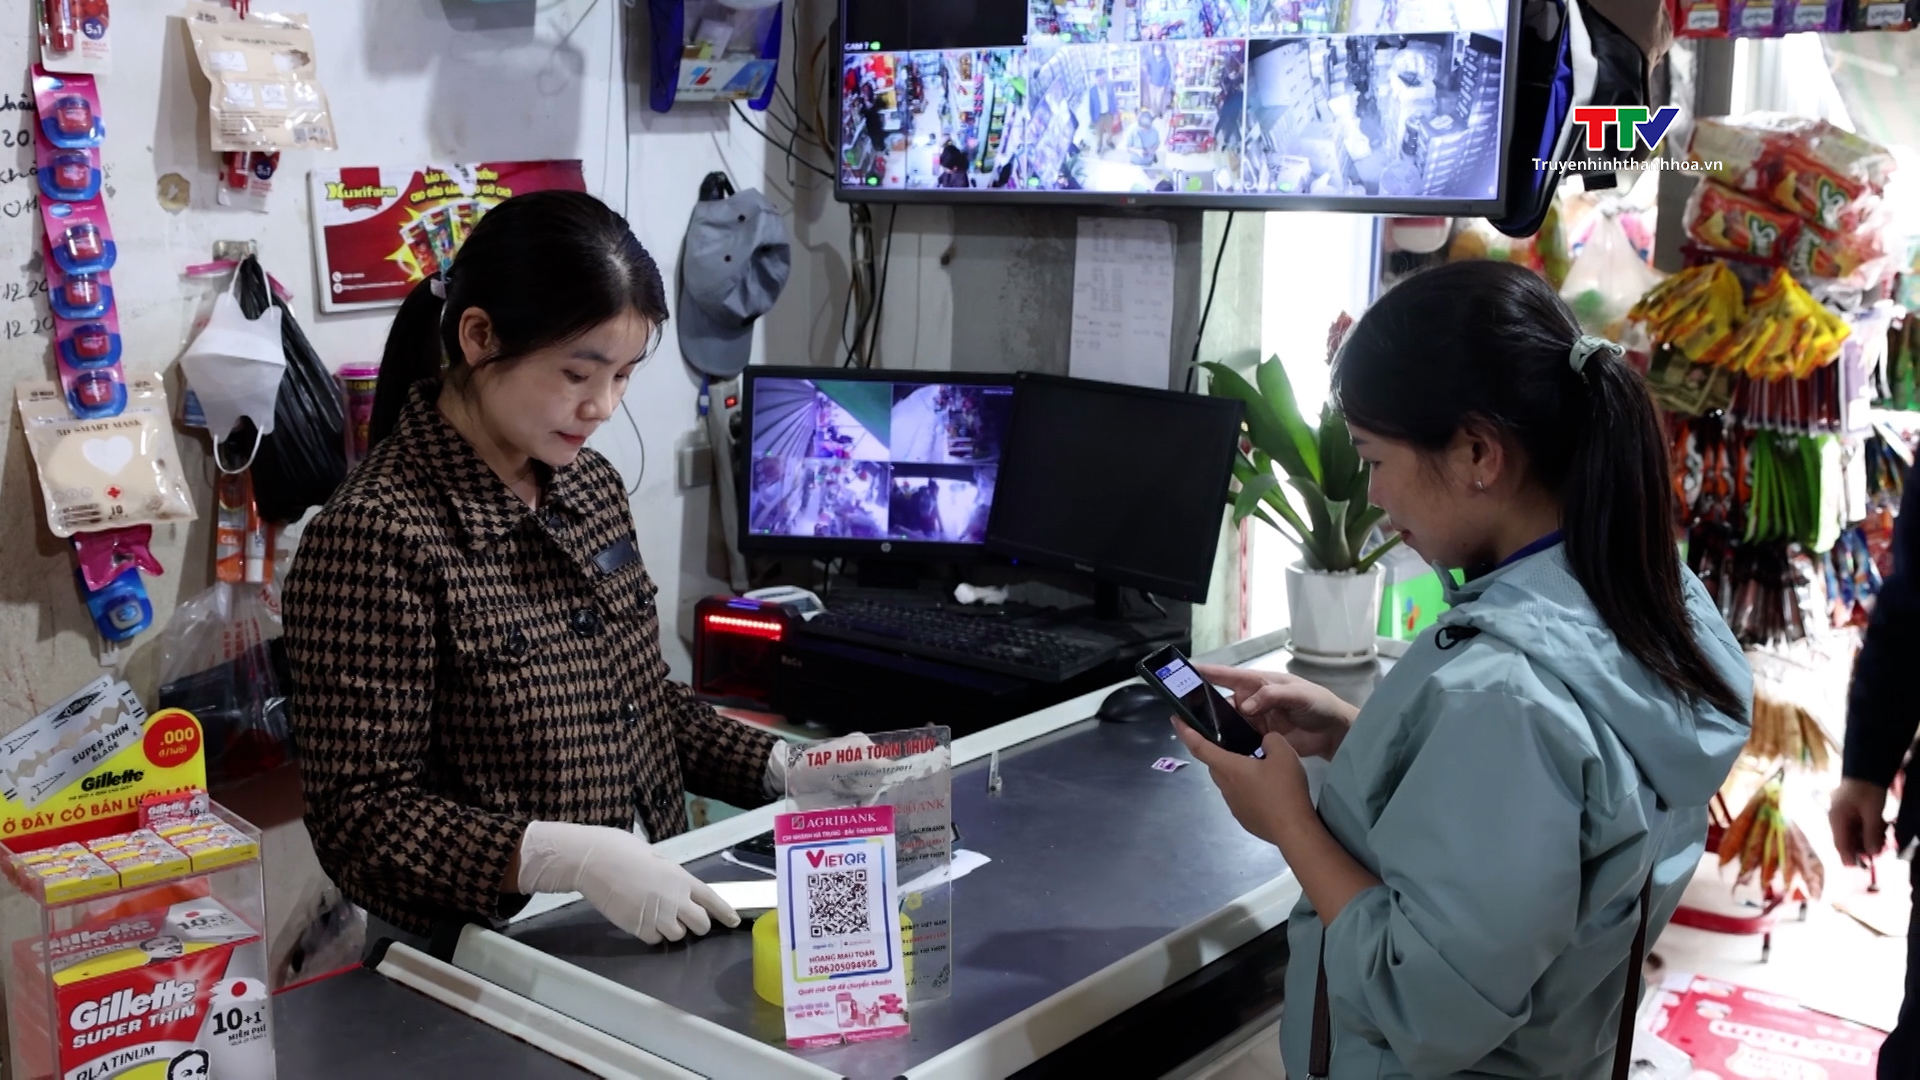 Huyện Hà Trung ứng dụng công nghệ số trong phát triển kinh tế, xã hội - Ảnh 3.